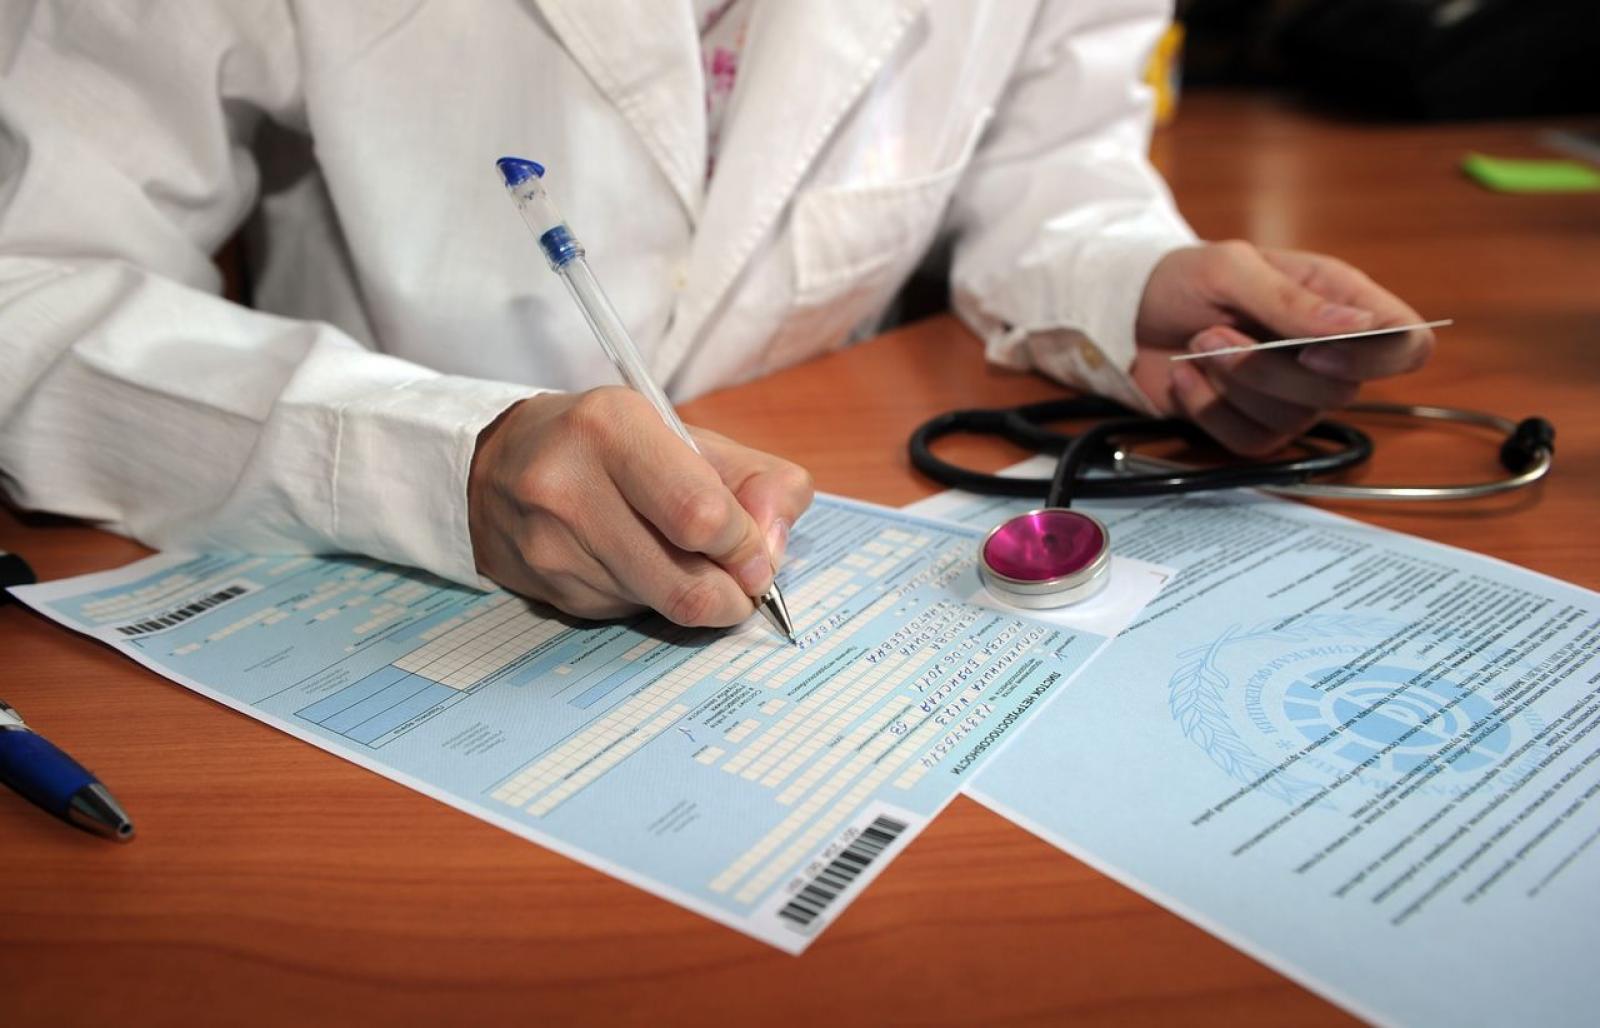 Понад 10 тисяч лучан уже підписали декларації з сімейними лікарями